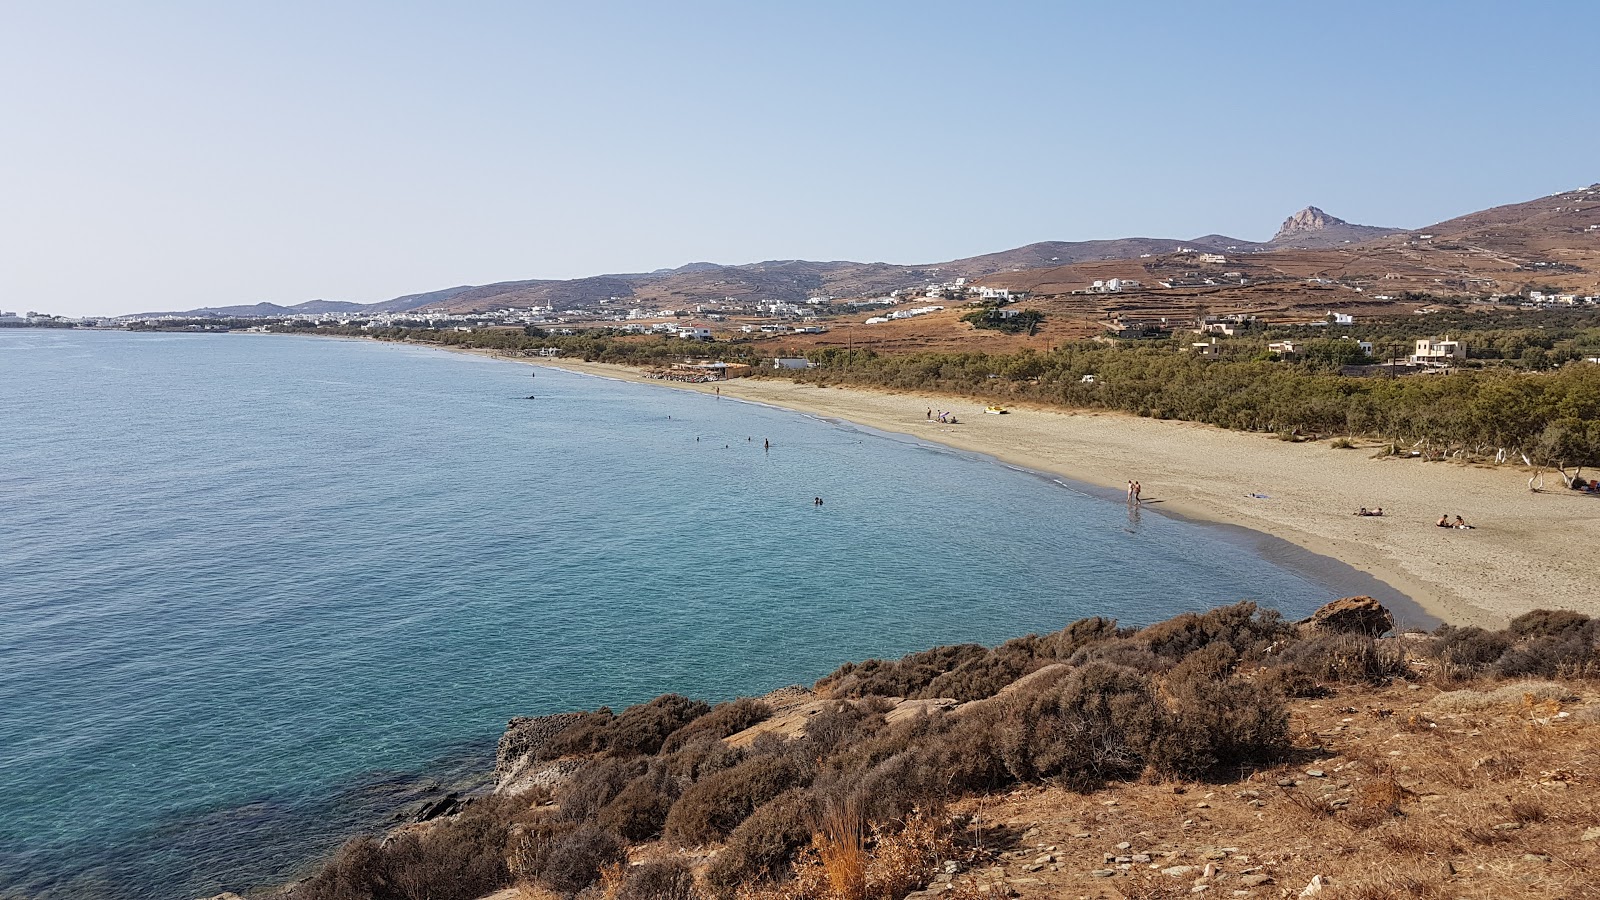 Agios Fokas'in fotoğrafı parlak ince kum yüzey ile